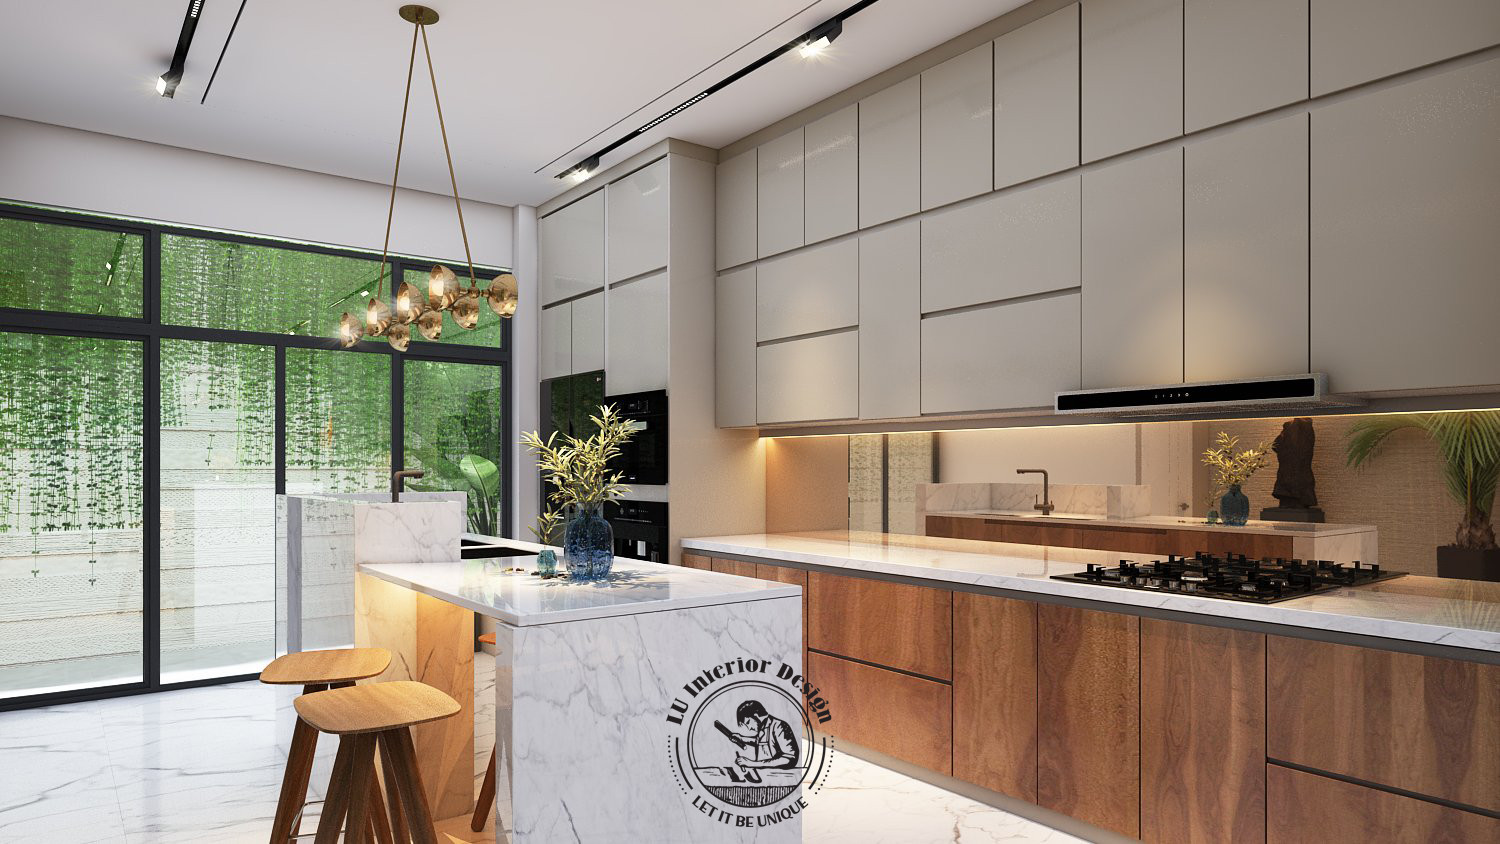 Với thiết kế cửa sổ kính lớn, nguồn sáng tự nhiên được tận dụng tối đa trong thiết kế phòng bếp hiện đại | Dự án nhà phố Townhouse Vũng Tàu - LU Design thực hiện.